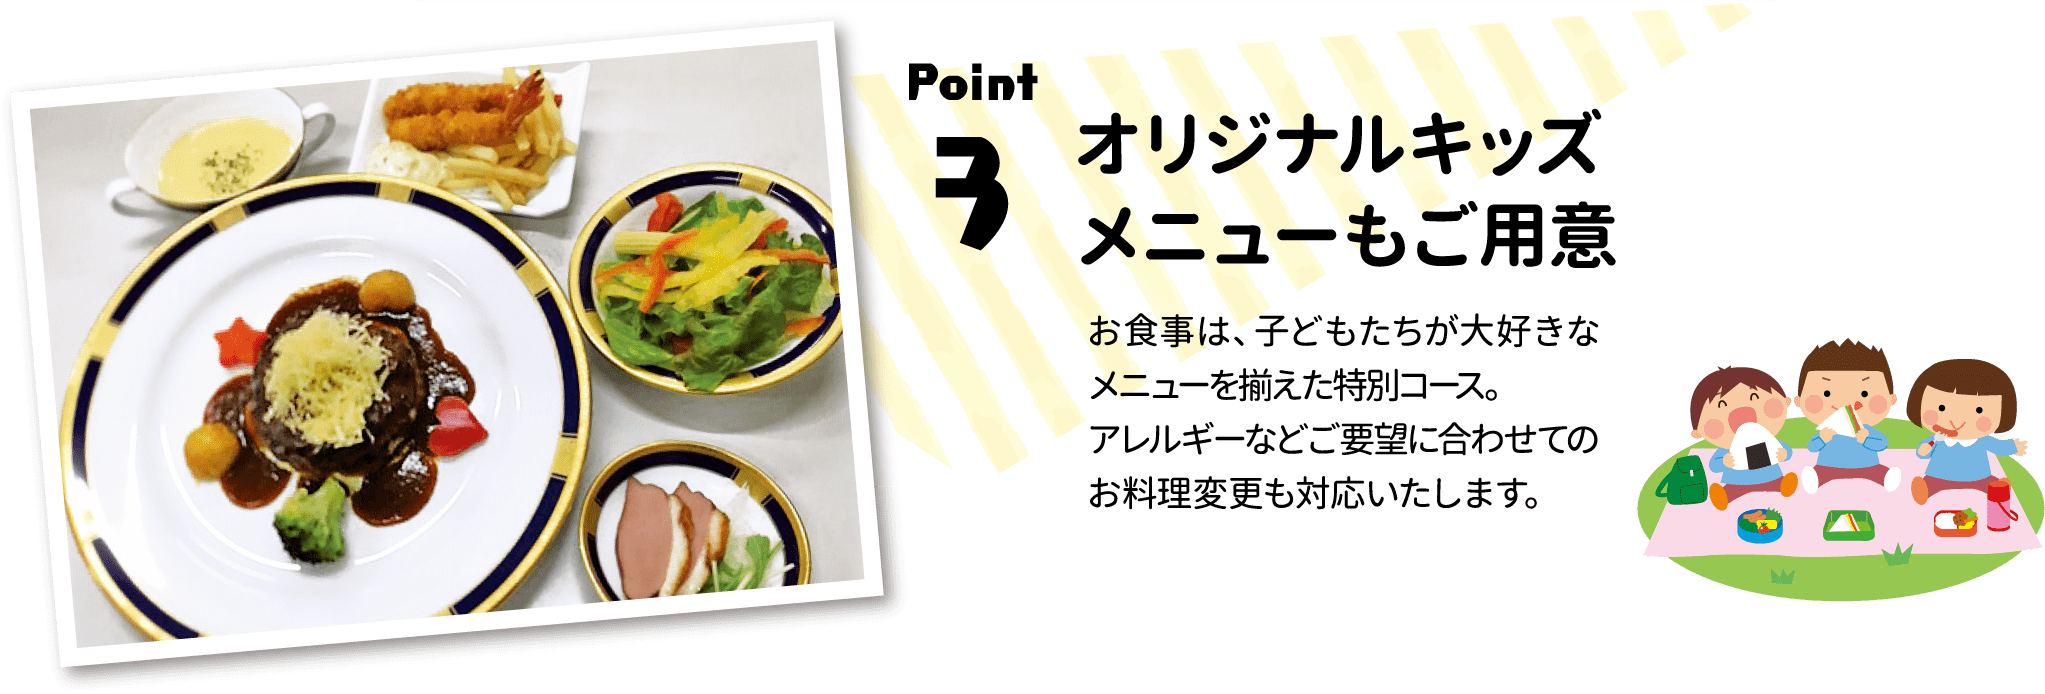 Point.3 オリジナルキッズメニューもご用意：お食事は、子どもたちが大好きなメニューを揃えた特別コース。アレルギーなどご要望に合わせてのお料理変更も対応いたします。